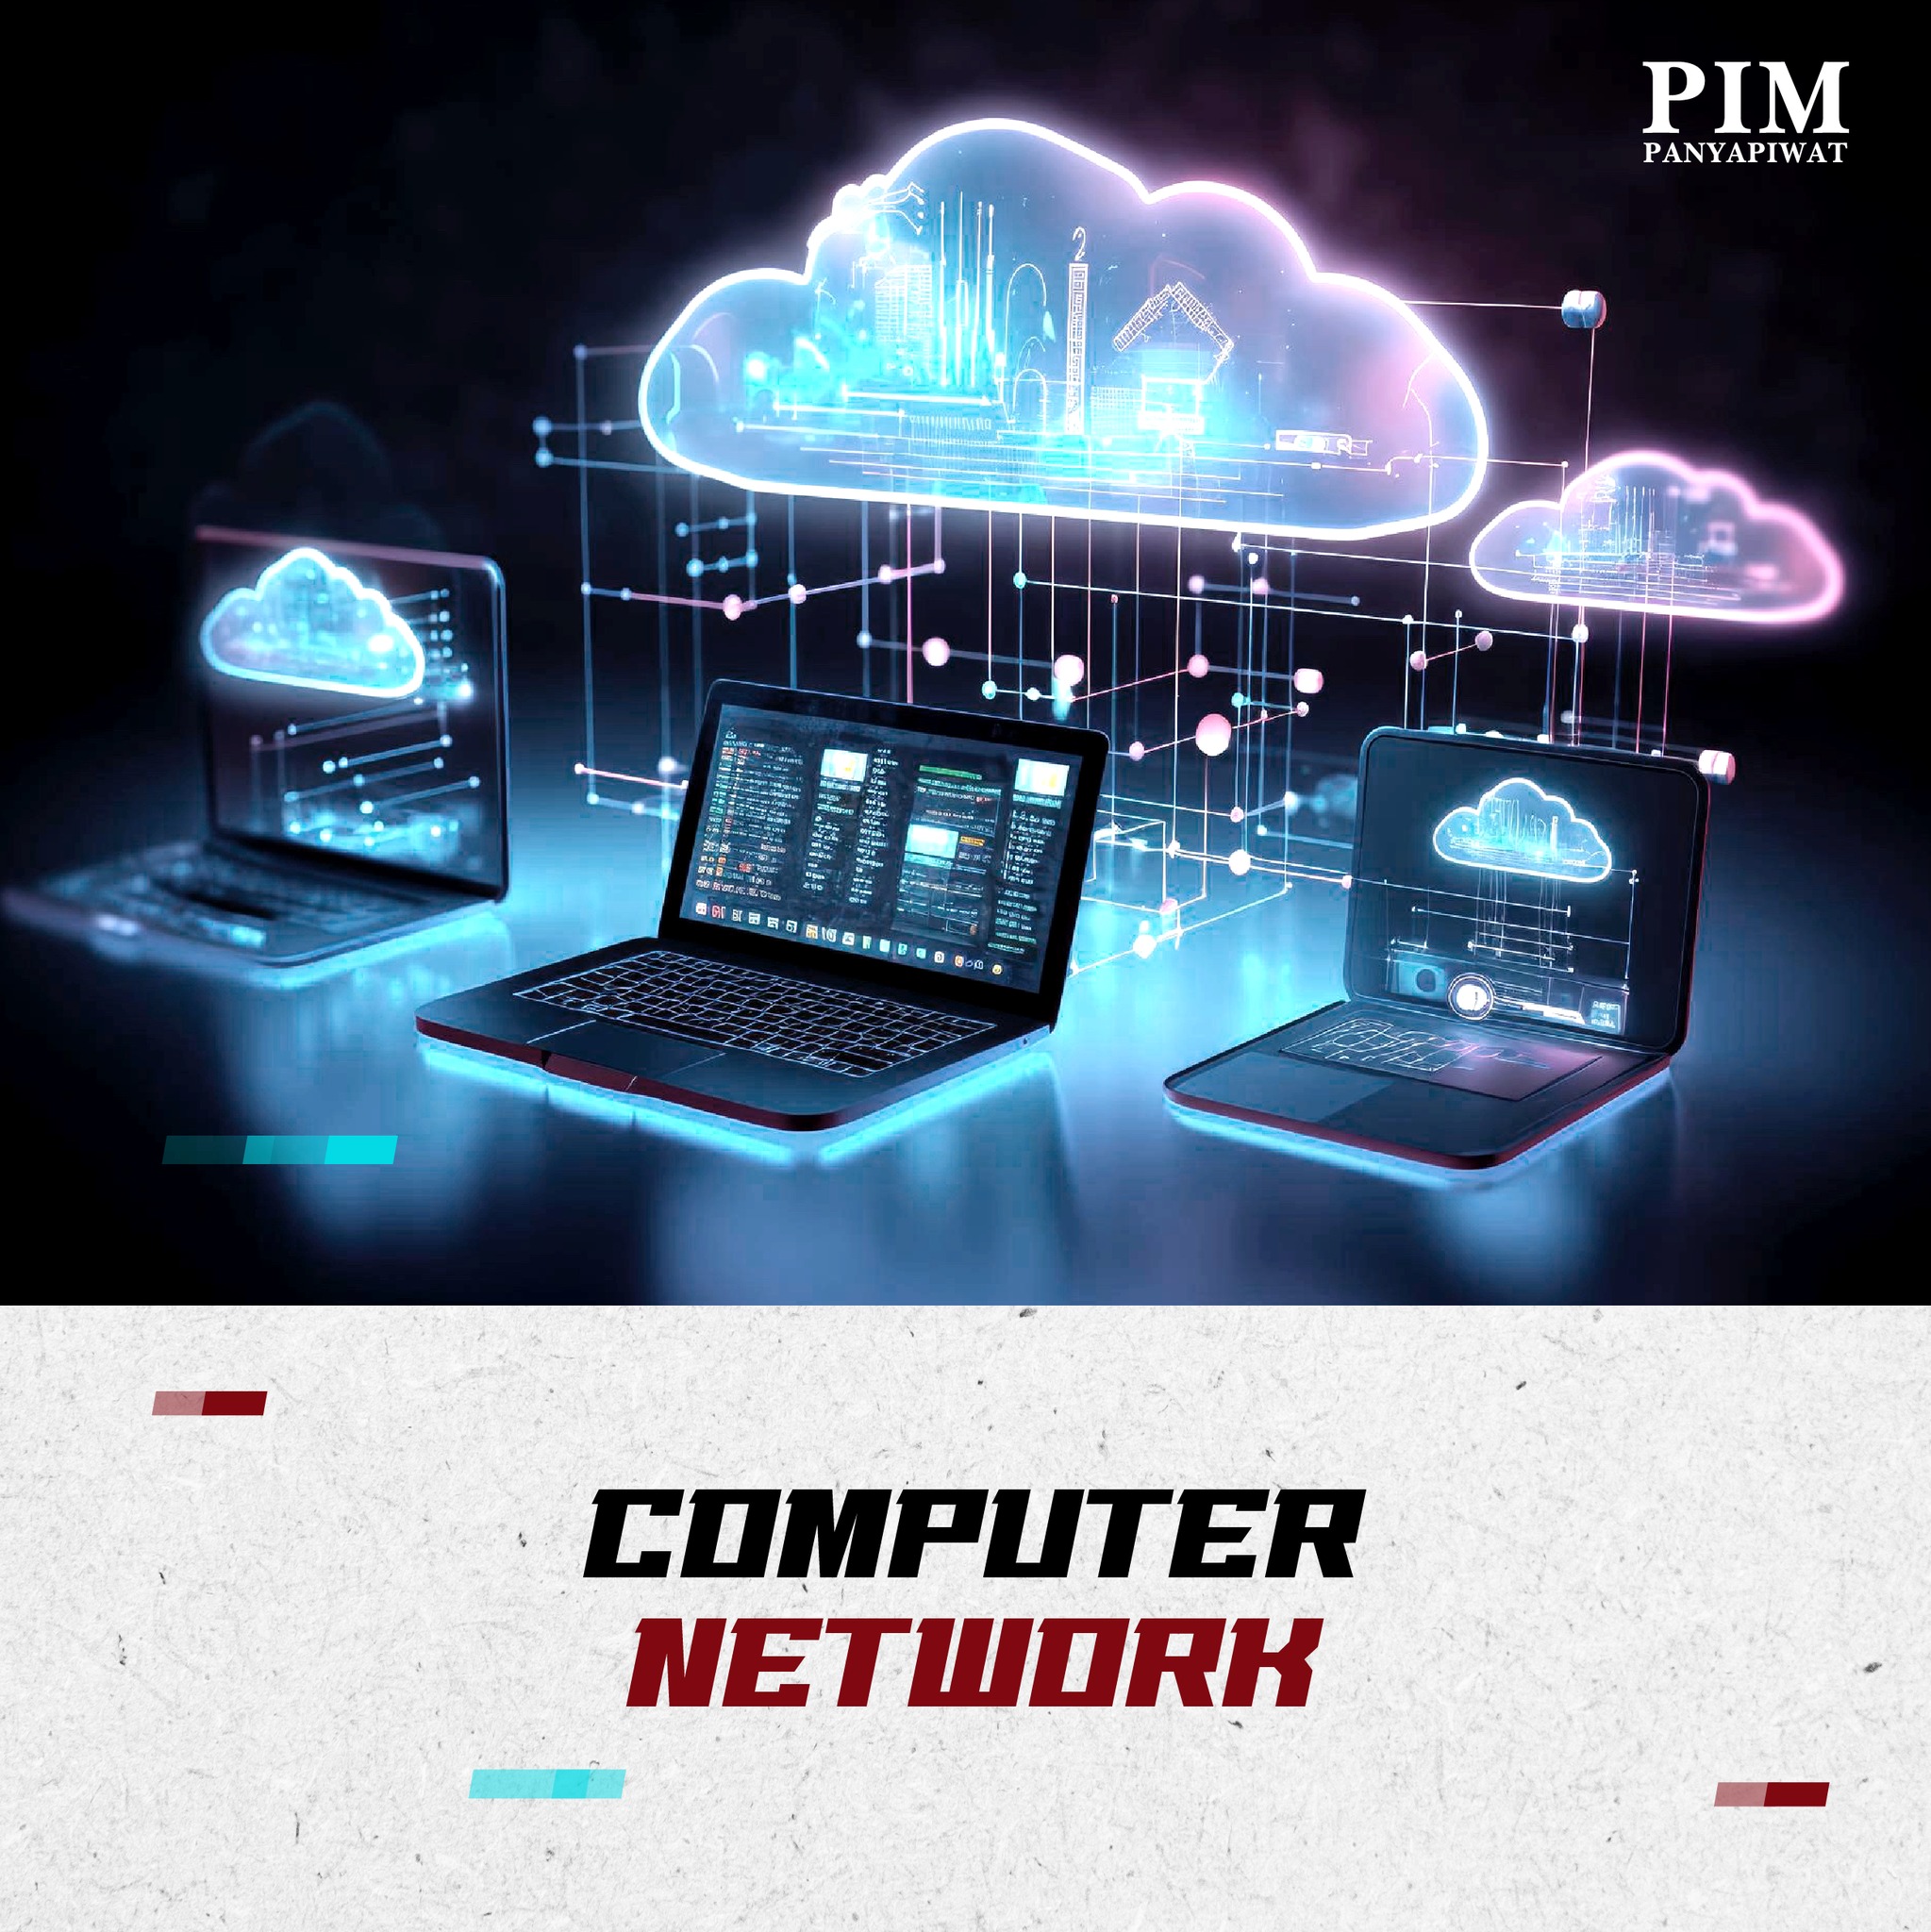 เรียนรู้ภาพรวมและการทำงานของระบบเครือข่ายคอมพิวเตอร์ โครงสร้างของระบบ ตลอดจนการประมวลผลออนไลน์ (Cloud Computing) และการให้บริการผ่านระบบ Server และคลาวด์ (Cloud Service) น้องๆ จะสามารถเชื่อมต่อระบบเครือข่ายผ่าน Server เพื่อสร้างหรือเข้าถึงการบริการในยุคดิจิทัล